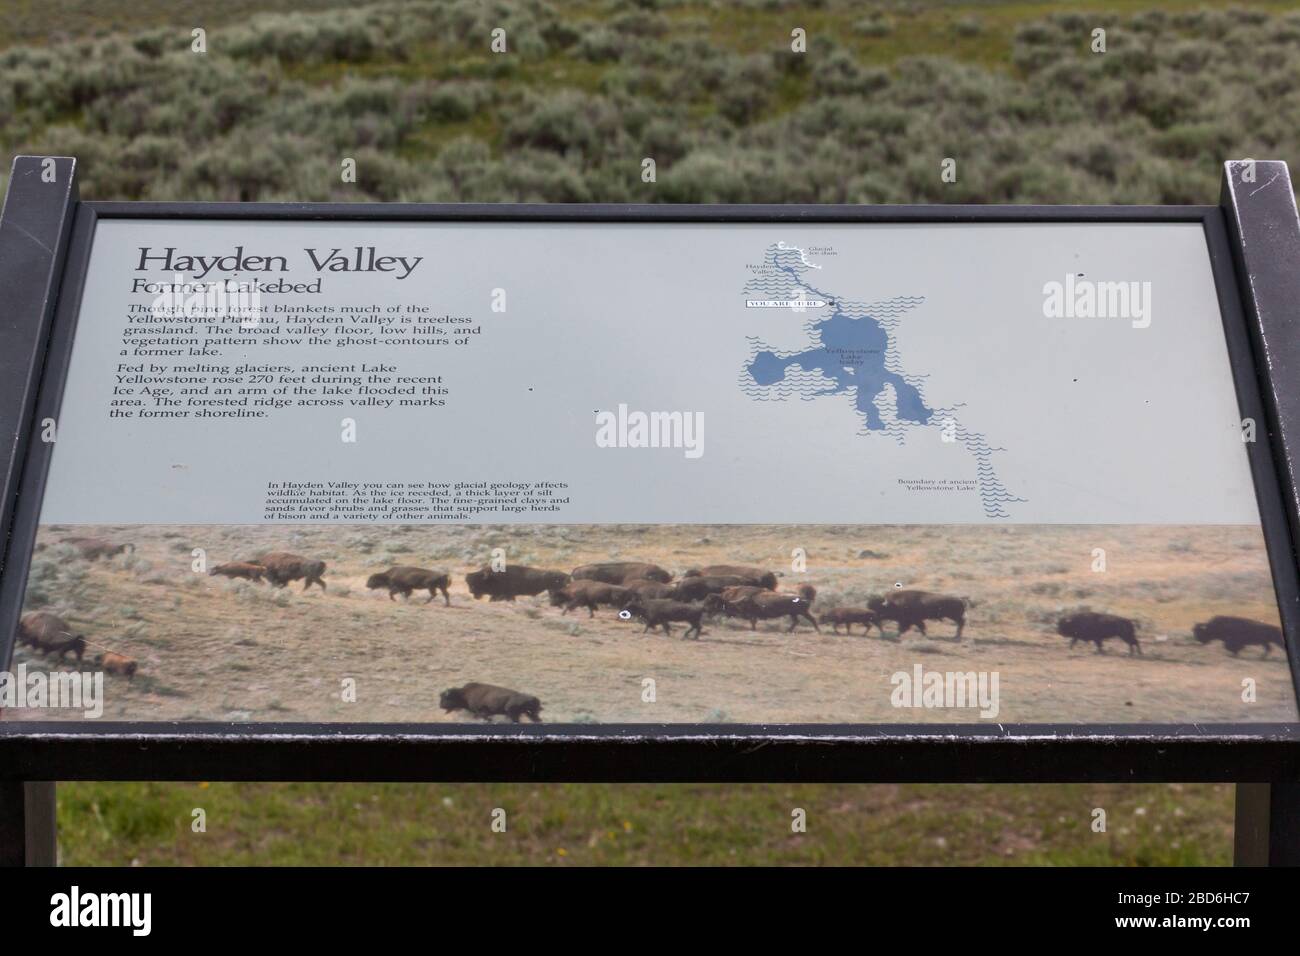 YELLOWSTONE NATIONAL PARK, USA - 12. Juli 2014: Ein Informationsschild mit Angaben zum Hayden Valley im Yellowstone National Park, Wyomin Stockfoto